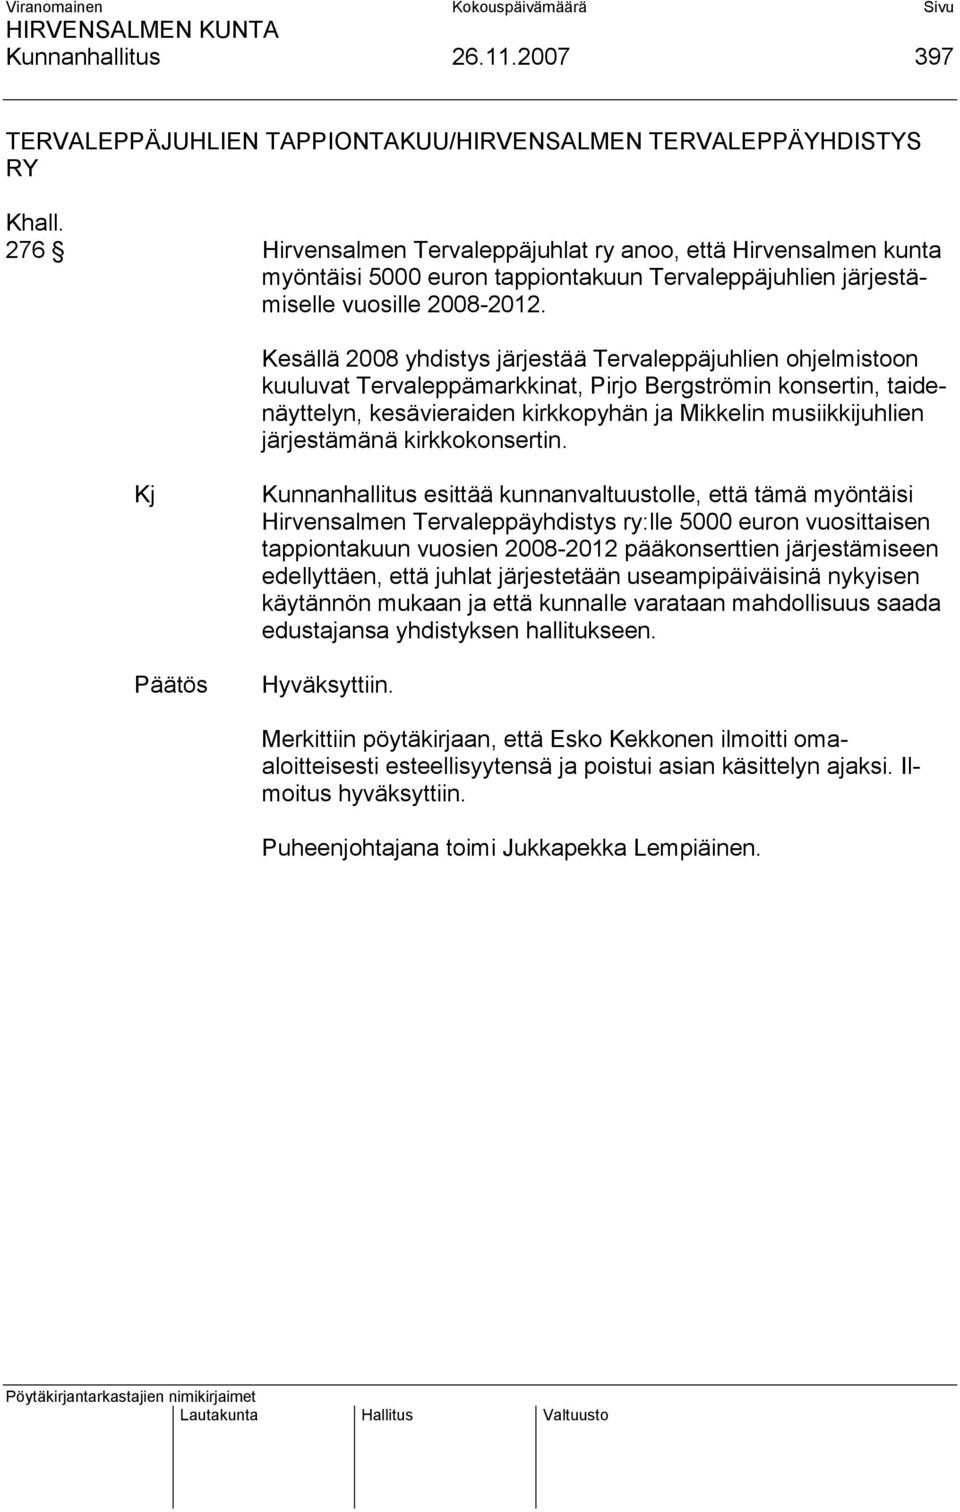 Kesällä 2008 yhdistys järjestää Tervaleppäjuhlien ohjelmistoon kuuluvat Tervaleppämarkkinat, Pirjo Bergströmin konsertin, taidenäyttelyn, kesävieraiden kirkkopyhän ja Mikkelin musiikkijuhlien